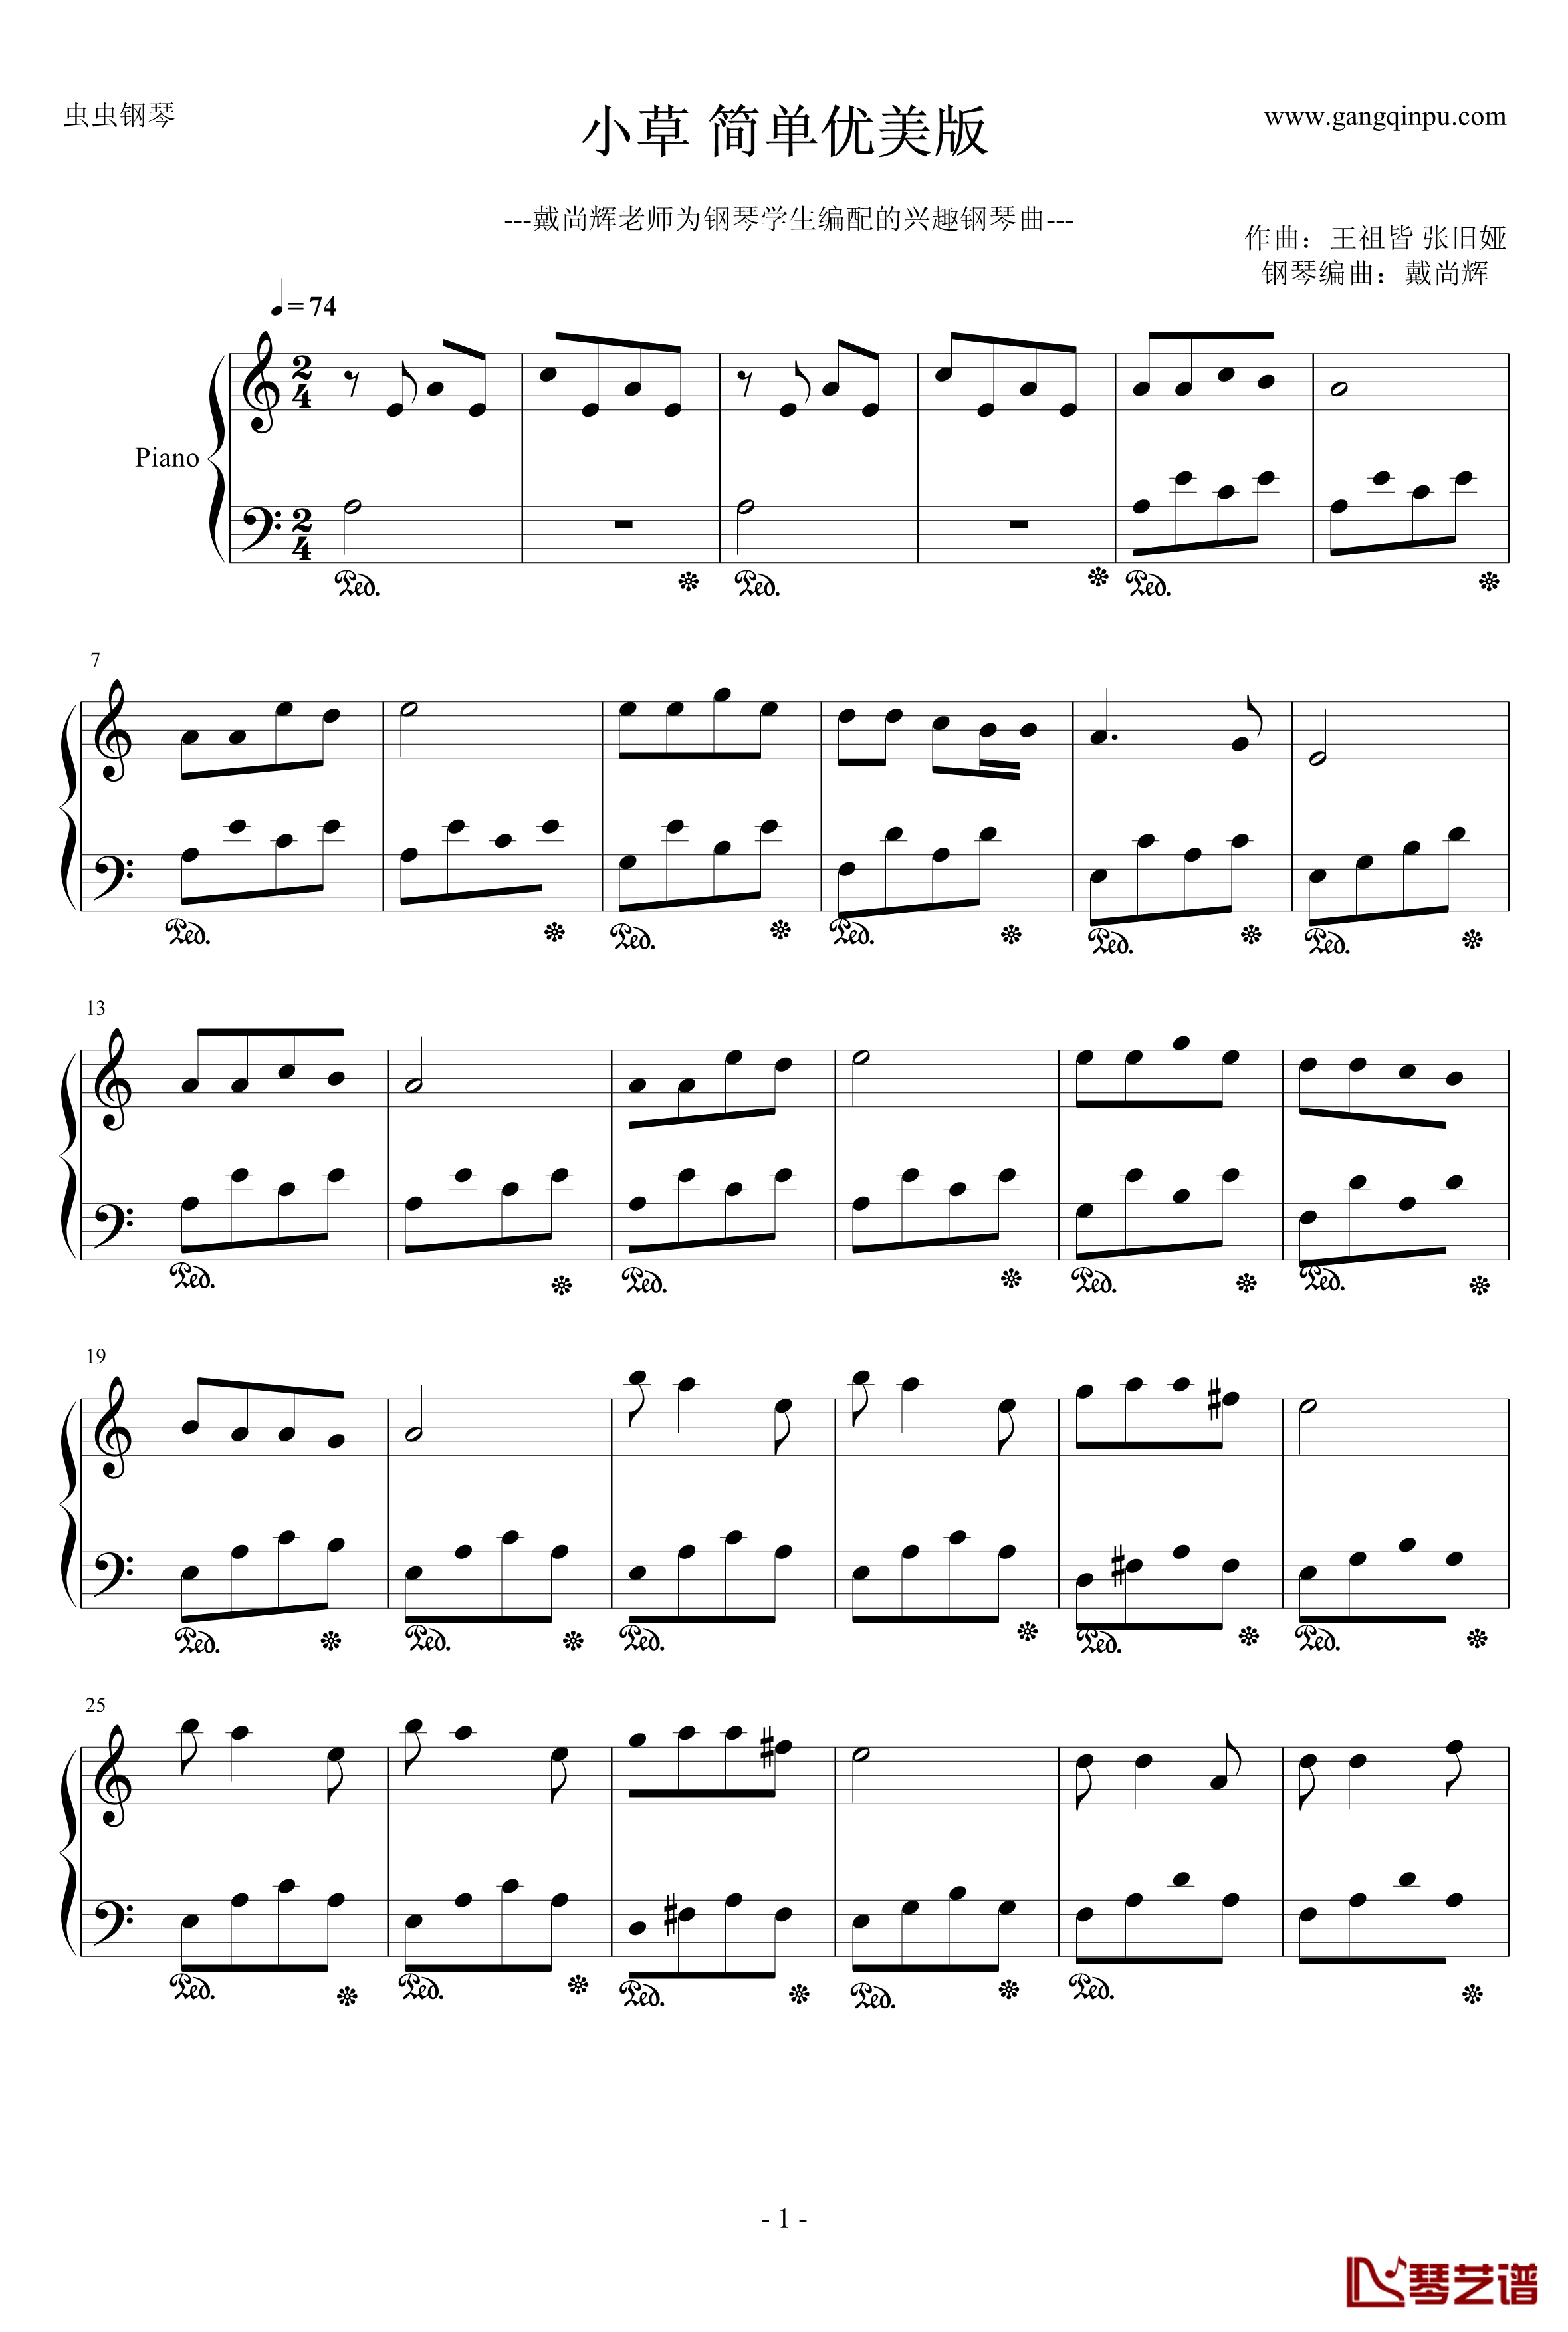 小草钢琴谱-简单优美版-中国名曲1